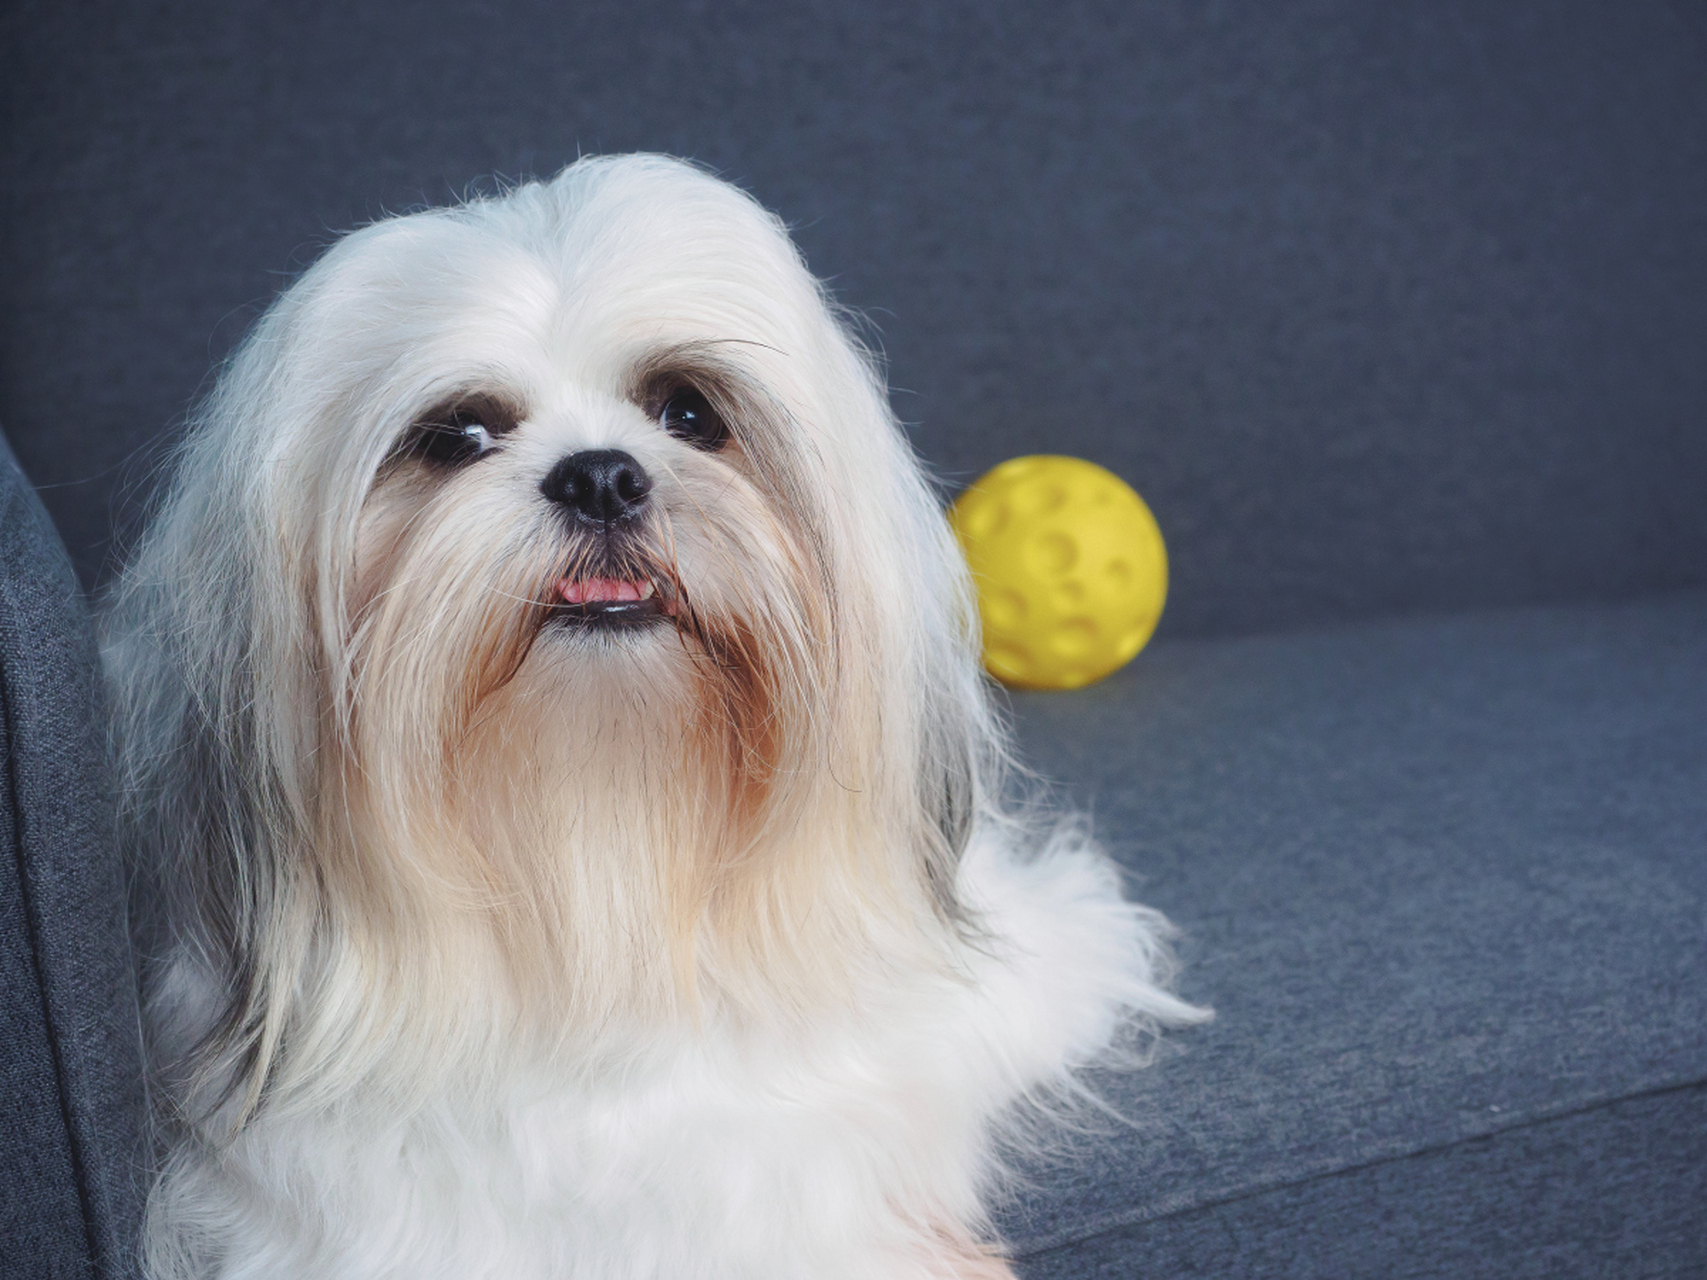 西施犬:温顺,友善的小型宠物犬  历史与起源 西施犬起源于中国,有着数